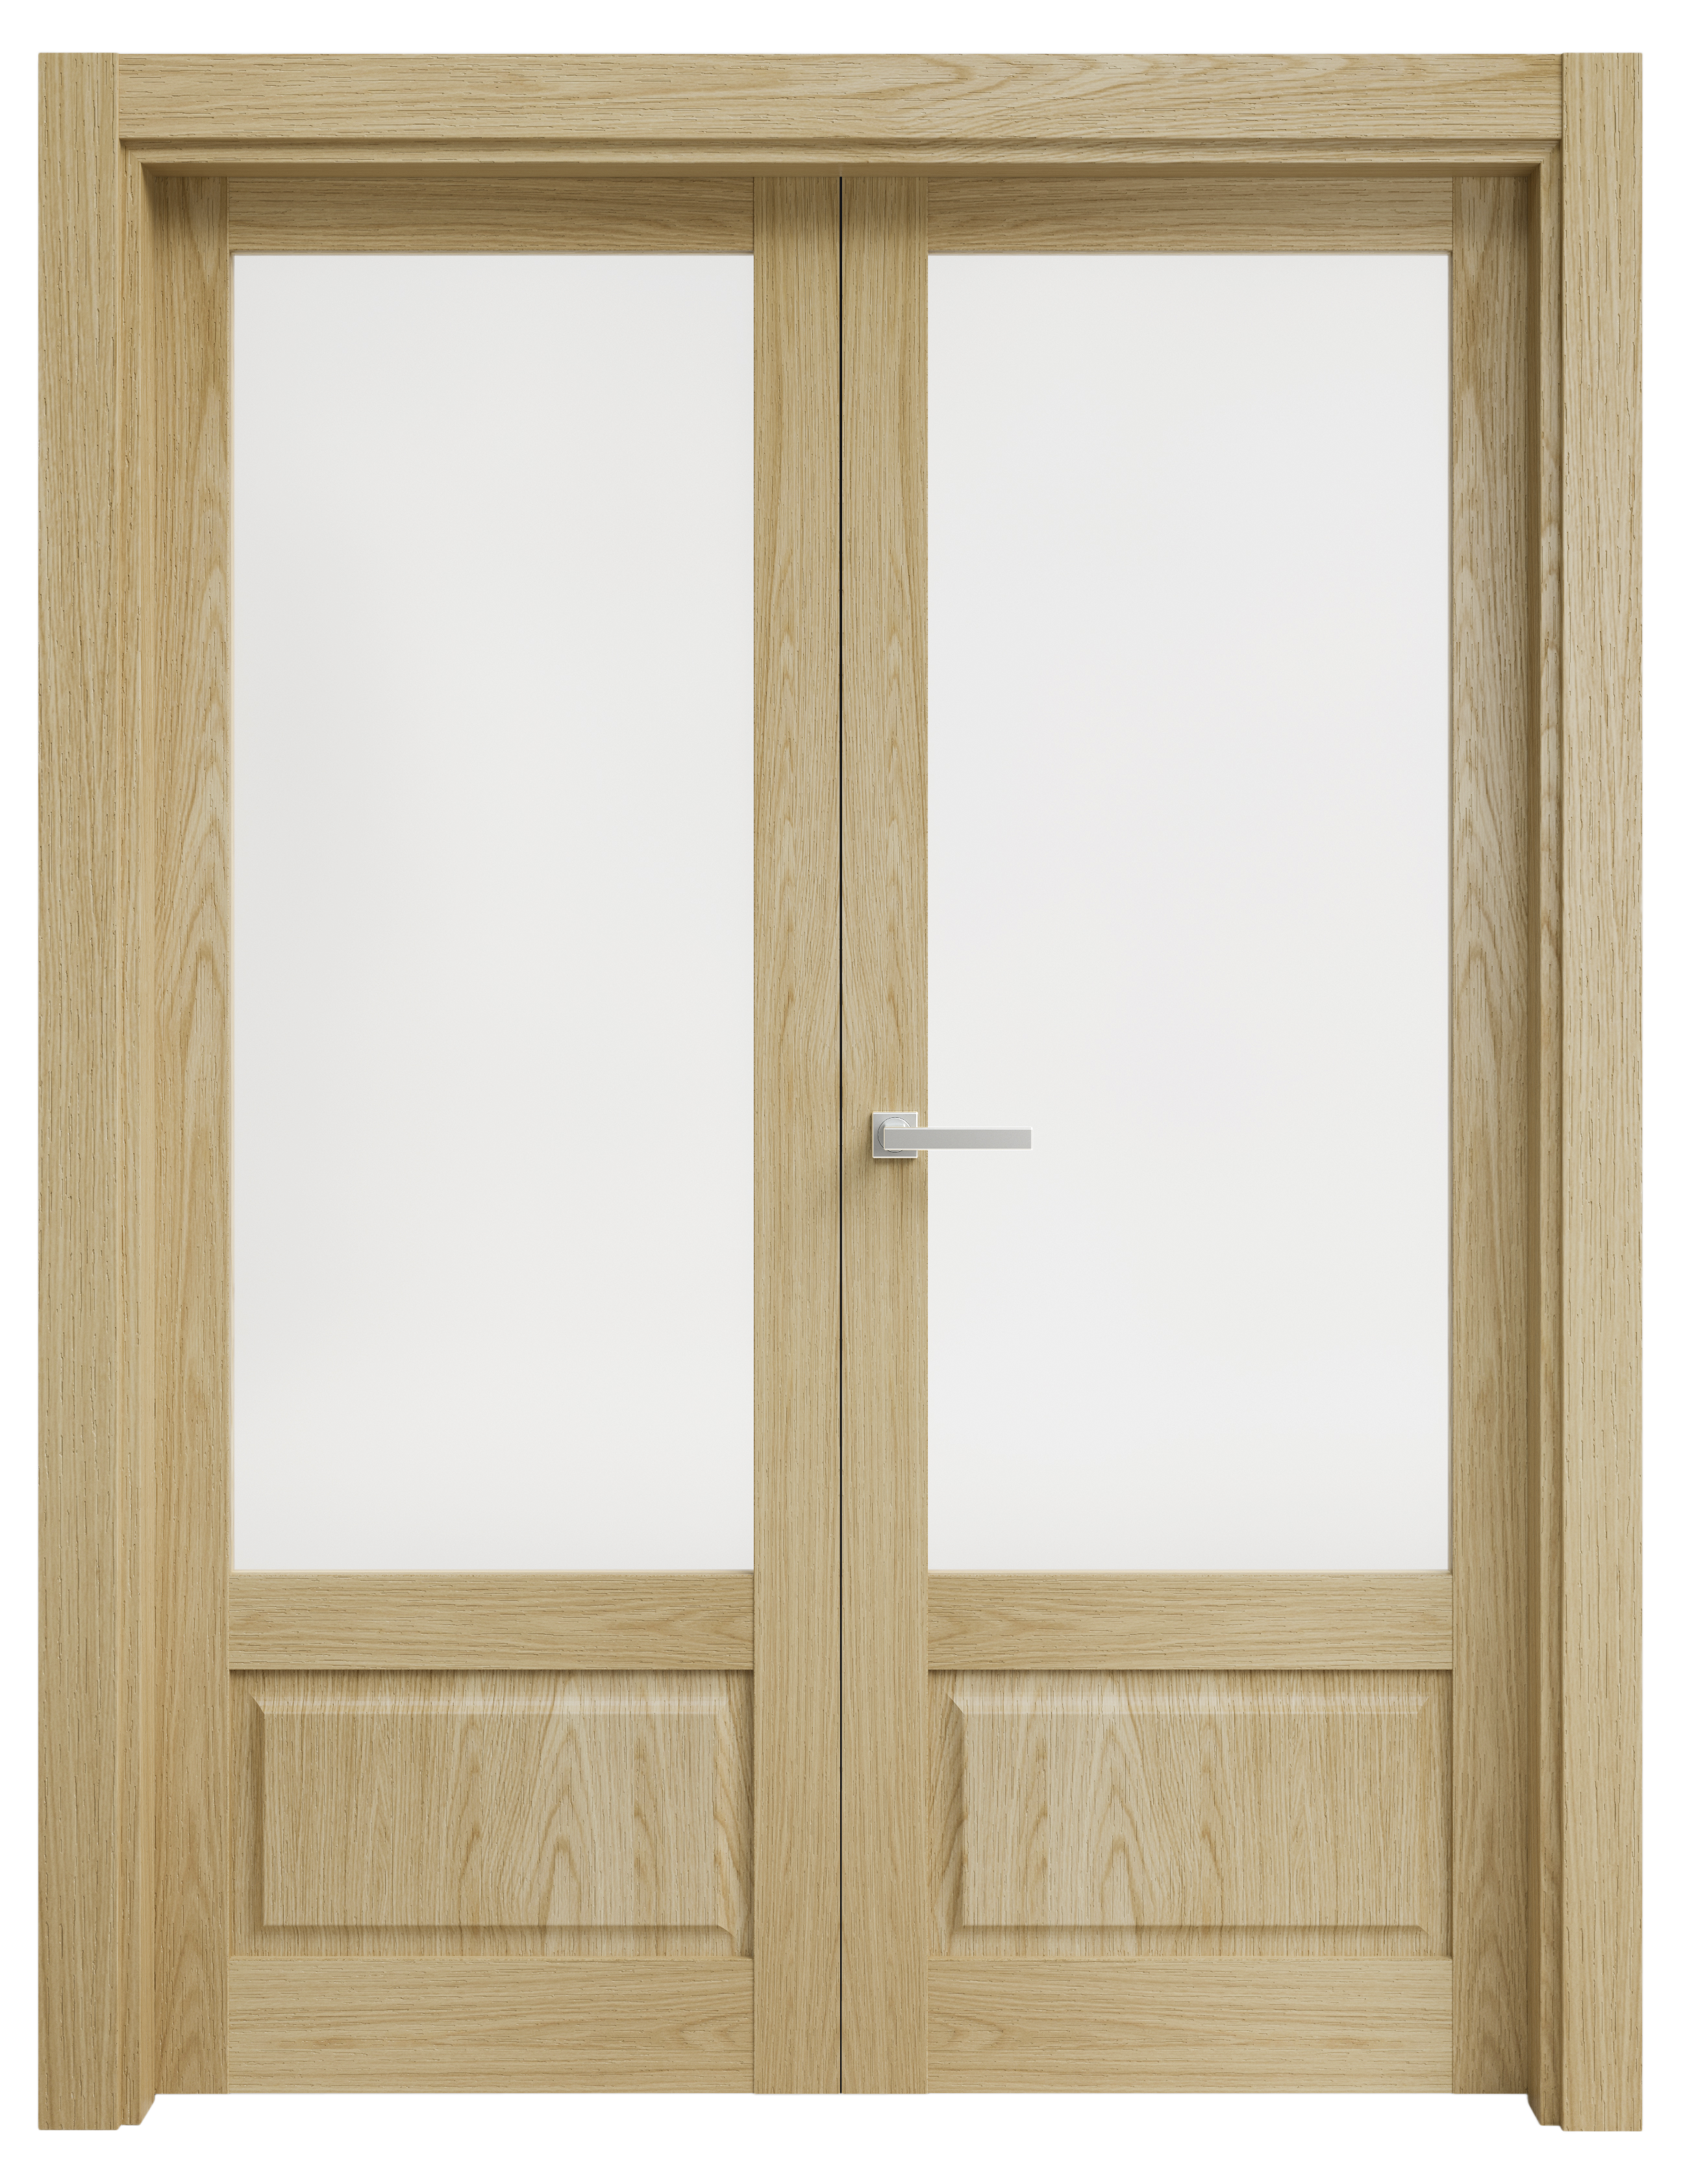 Puerta abatible sofia blanca line plus con cristal roble izquierda de 145 cm